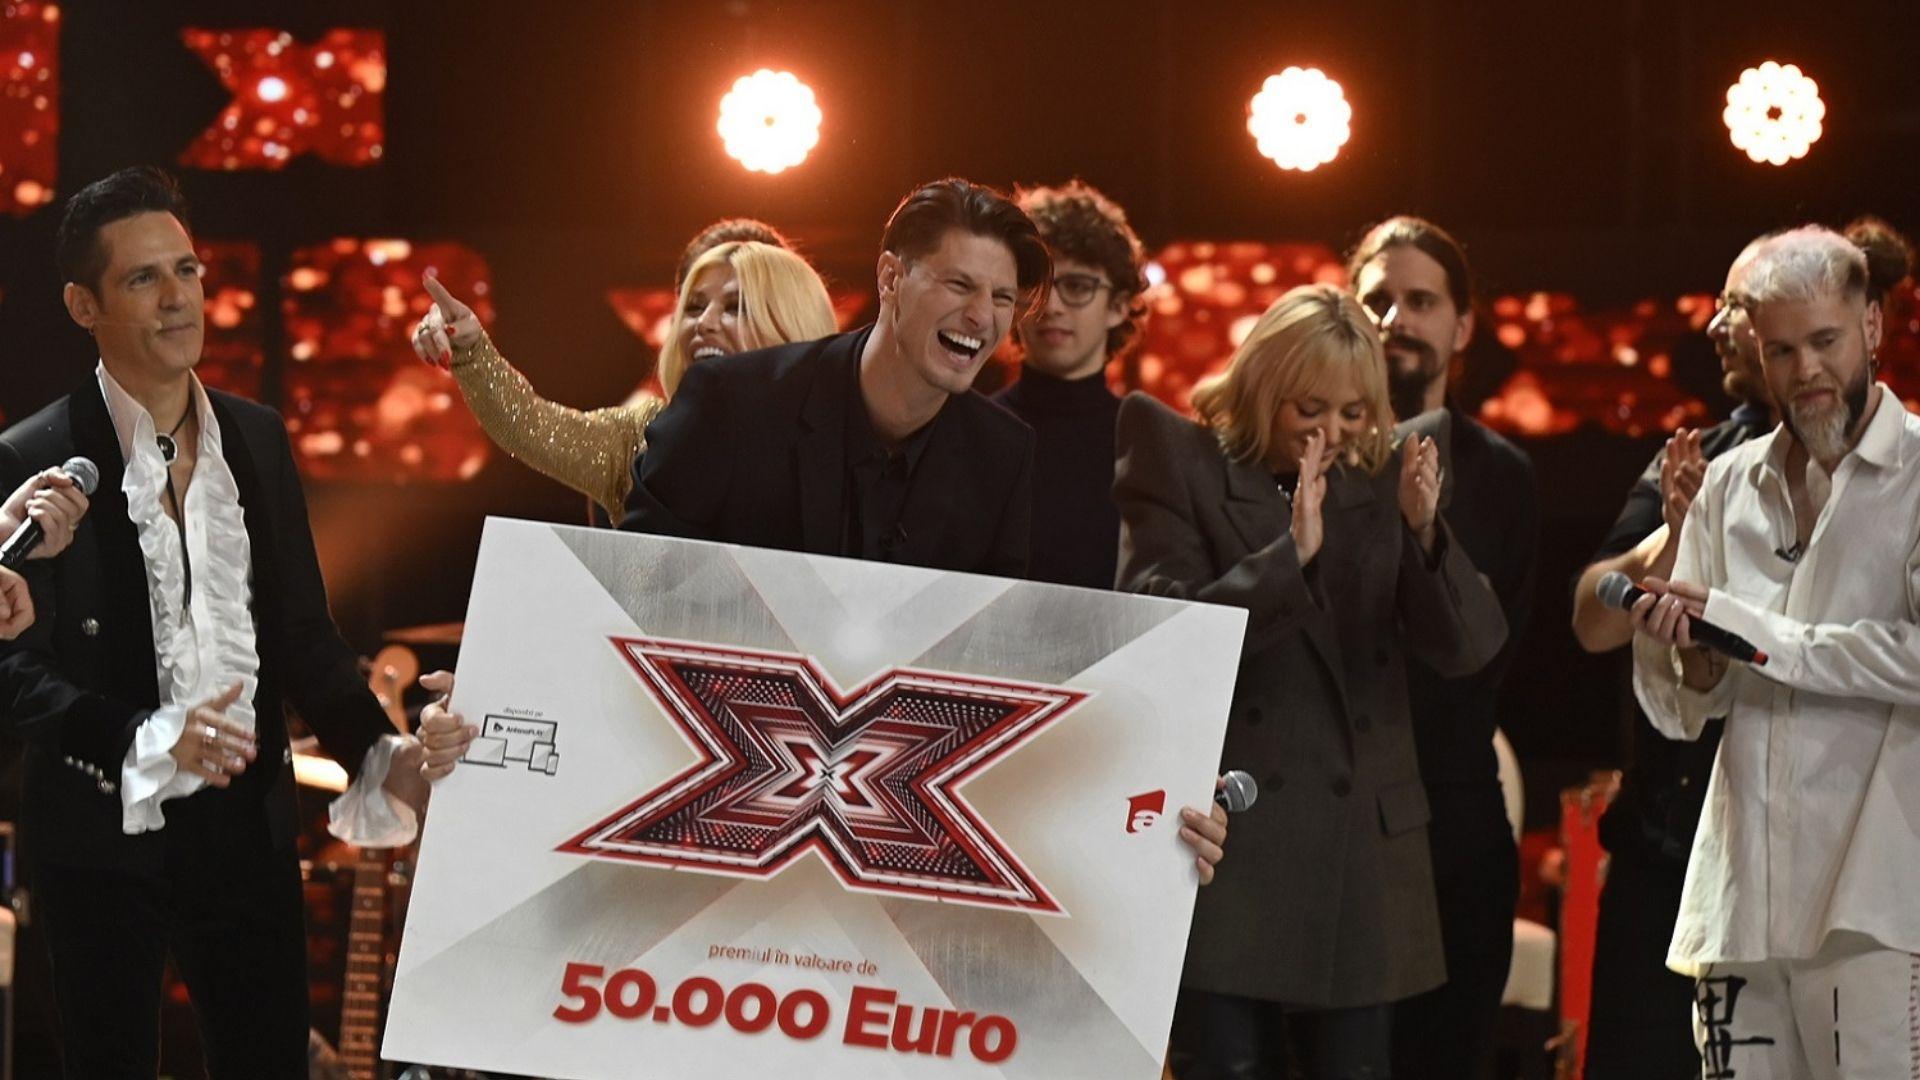 Nick Casciaro este câștigătorul sezonului 10 X Factor: „Pentru mine, X Factor este o renaștere”. Ce a declarat Loredana